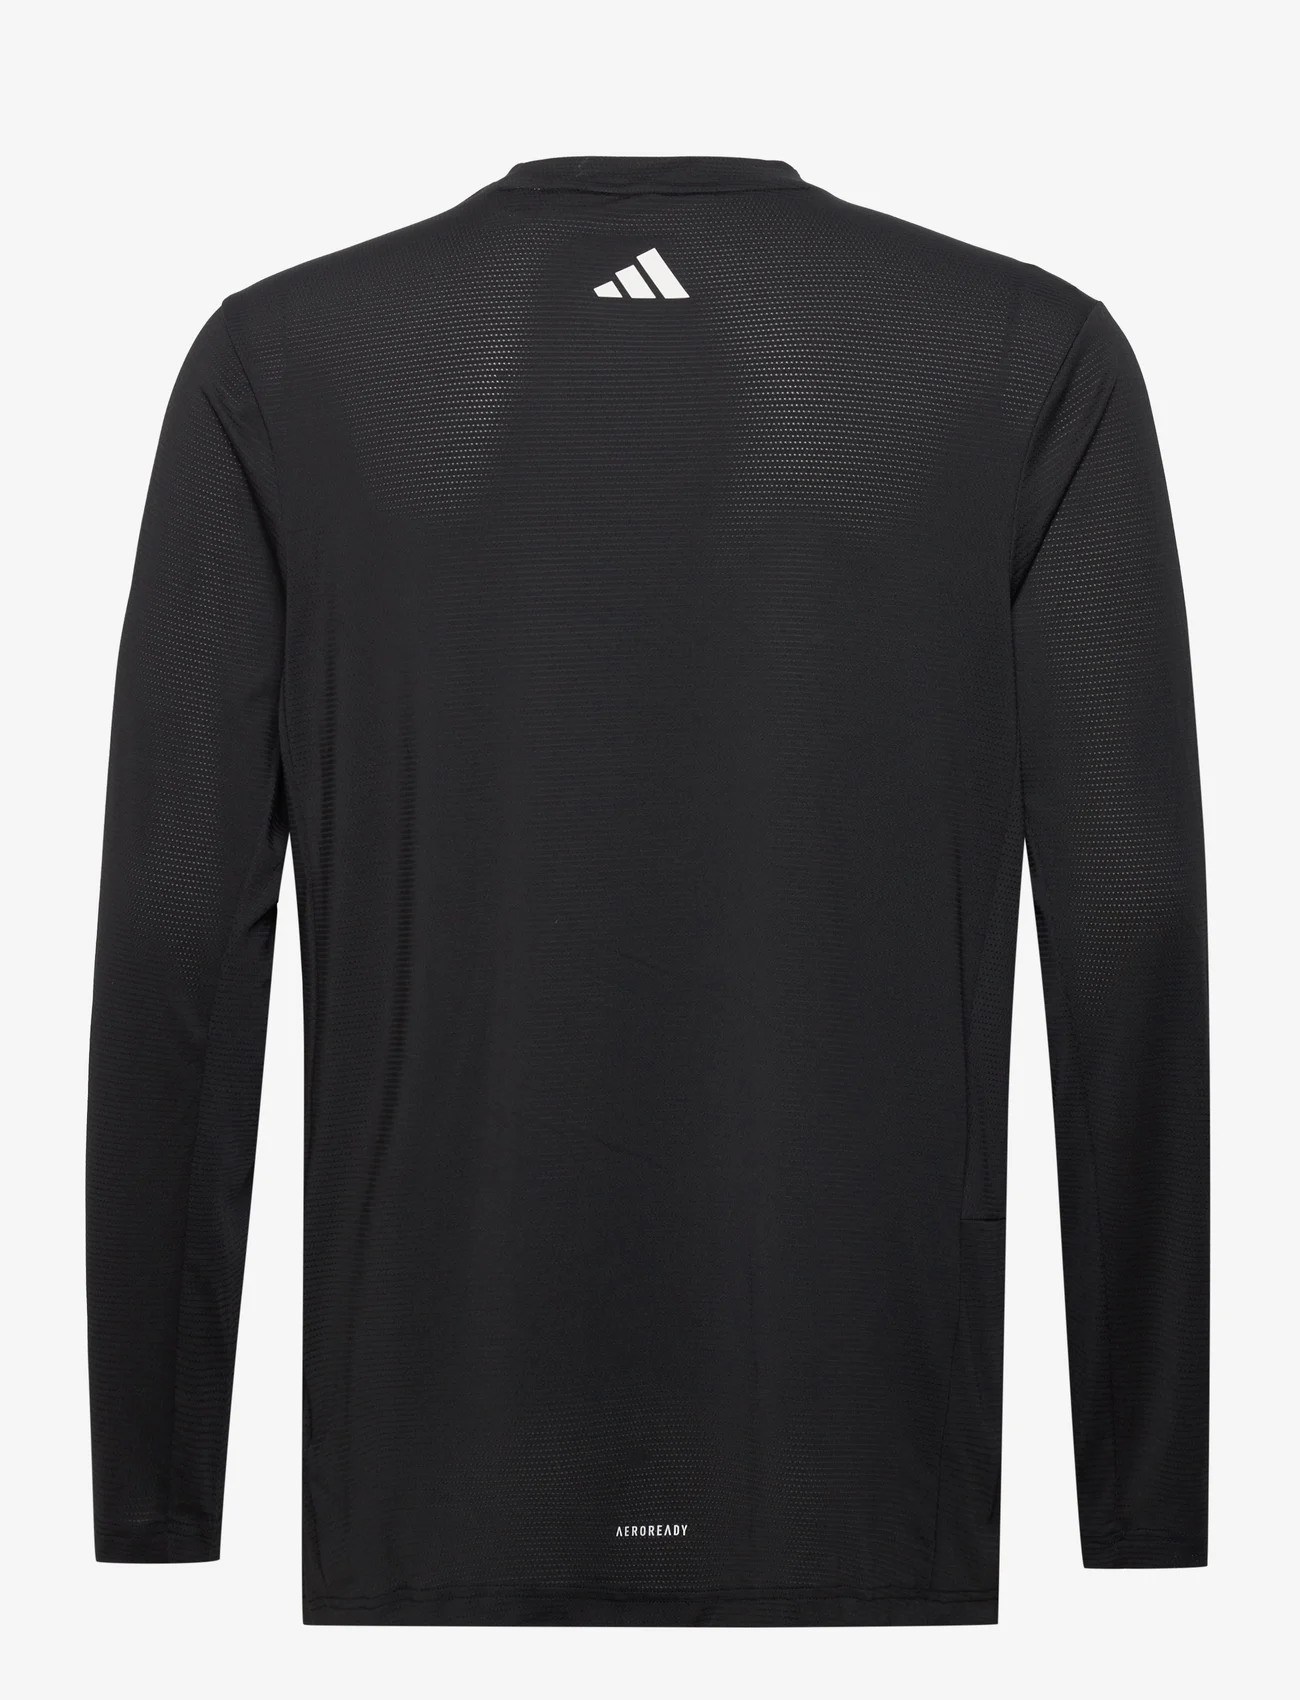 adidas Performance - TI 3B LS TEE - bluzki z długim rękawem - black/white - 1